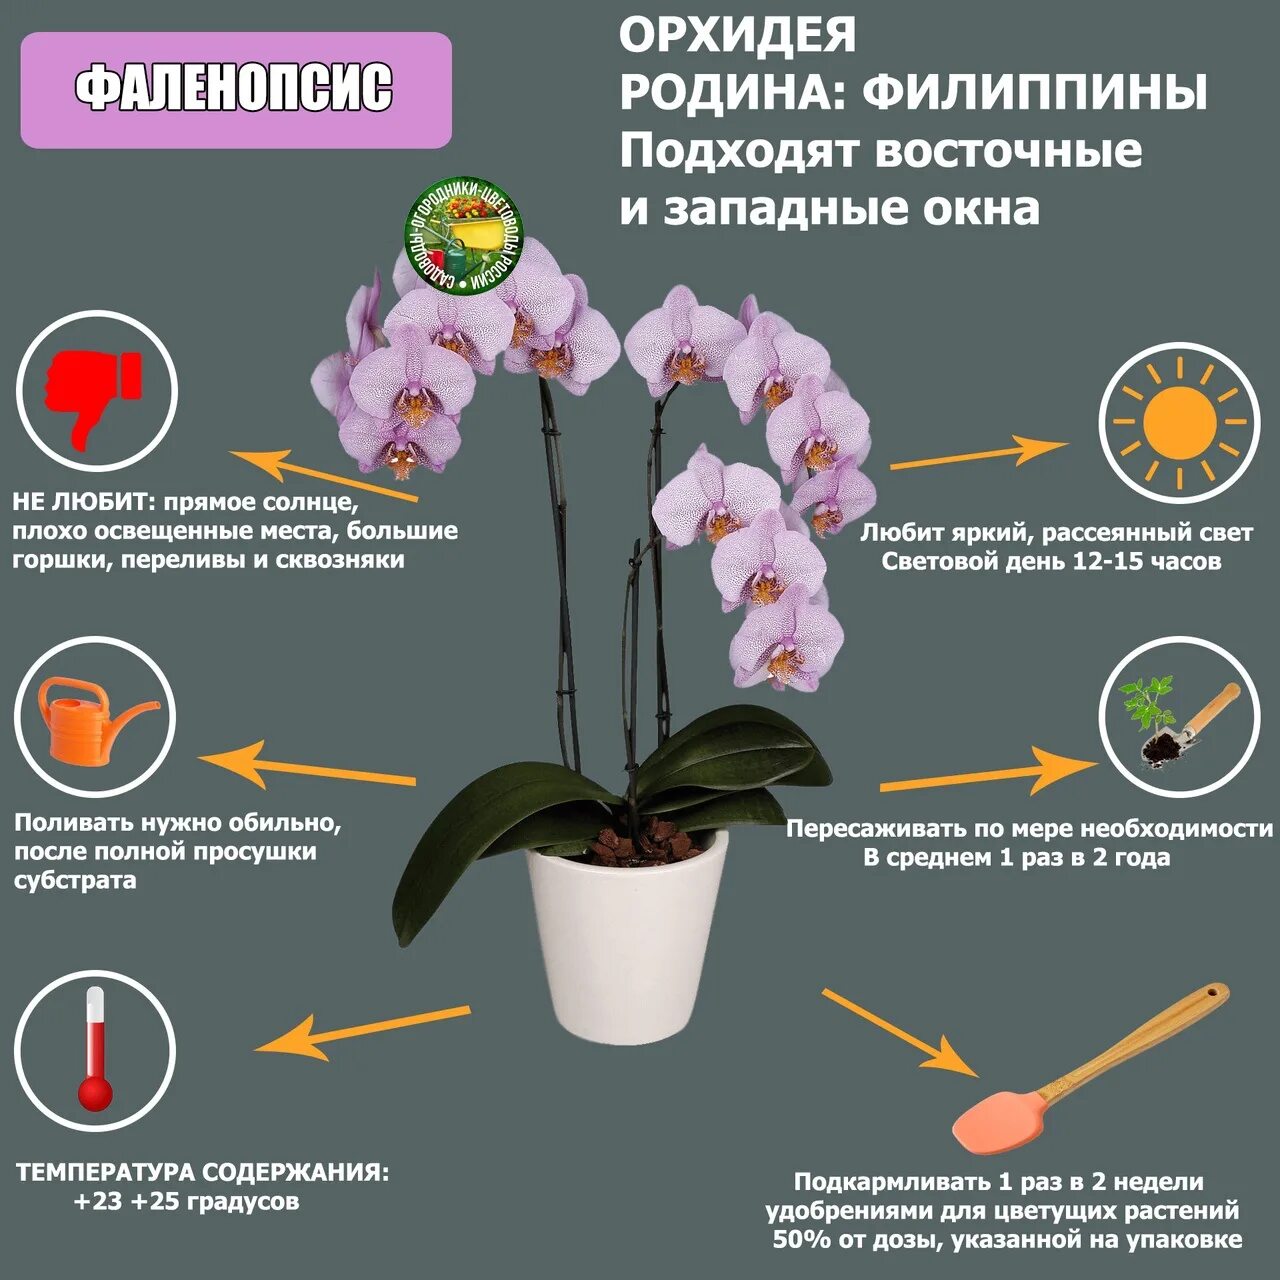 Как отличить орхидею. Орхидея фаленопсис комнатное растение. Орхидея ambiance Phalaenopsis. Пересаживаем орхидею фаленопсис. Орхидея фаленопсис Родина растения.